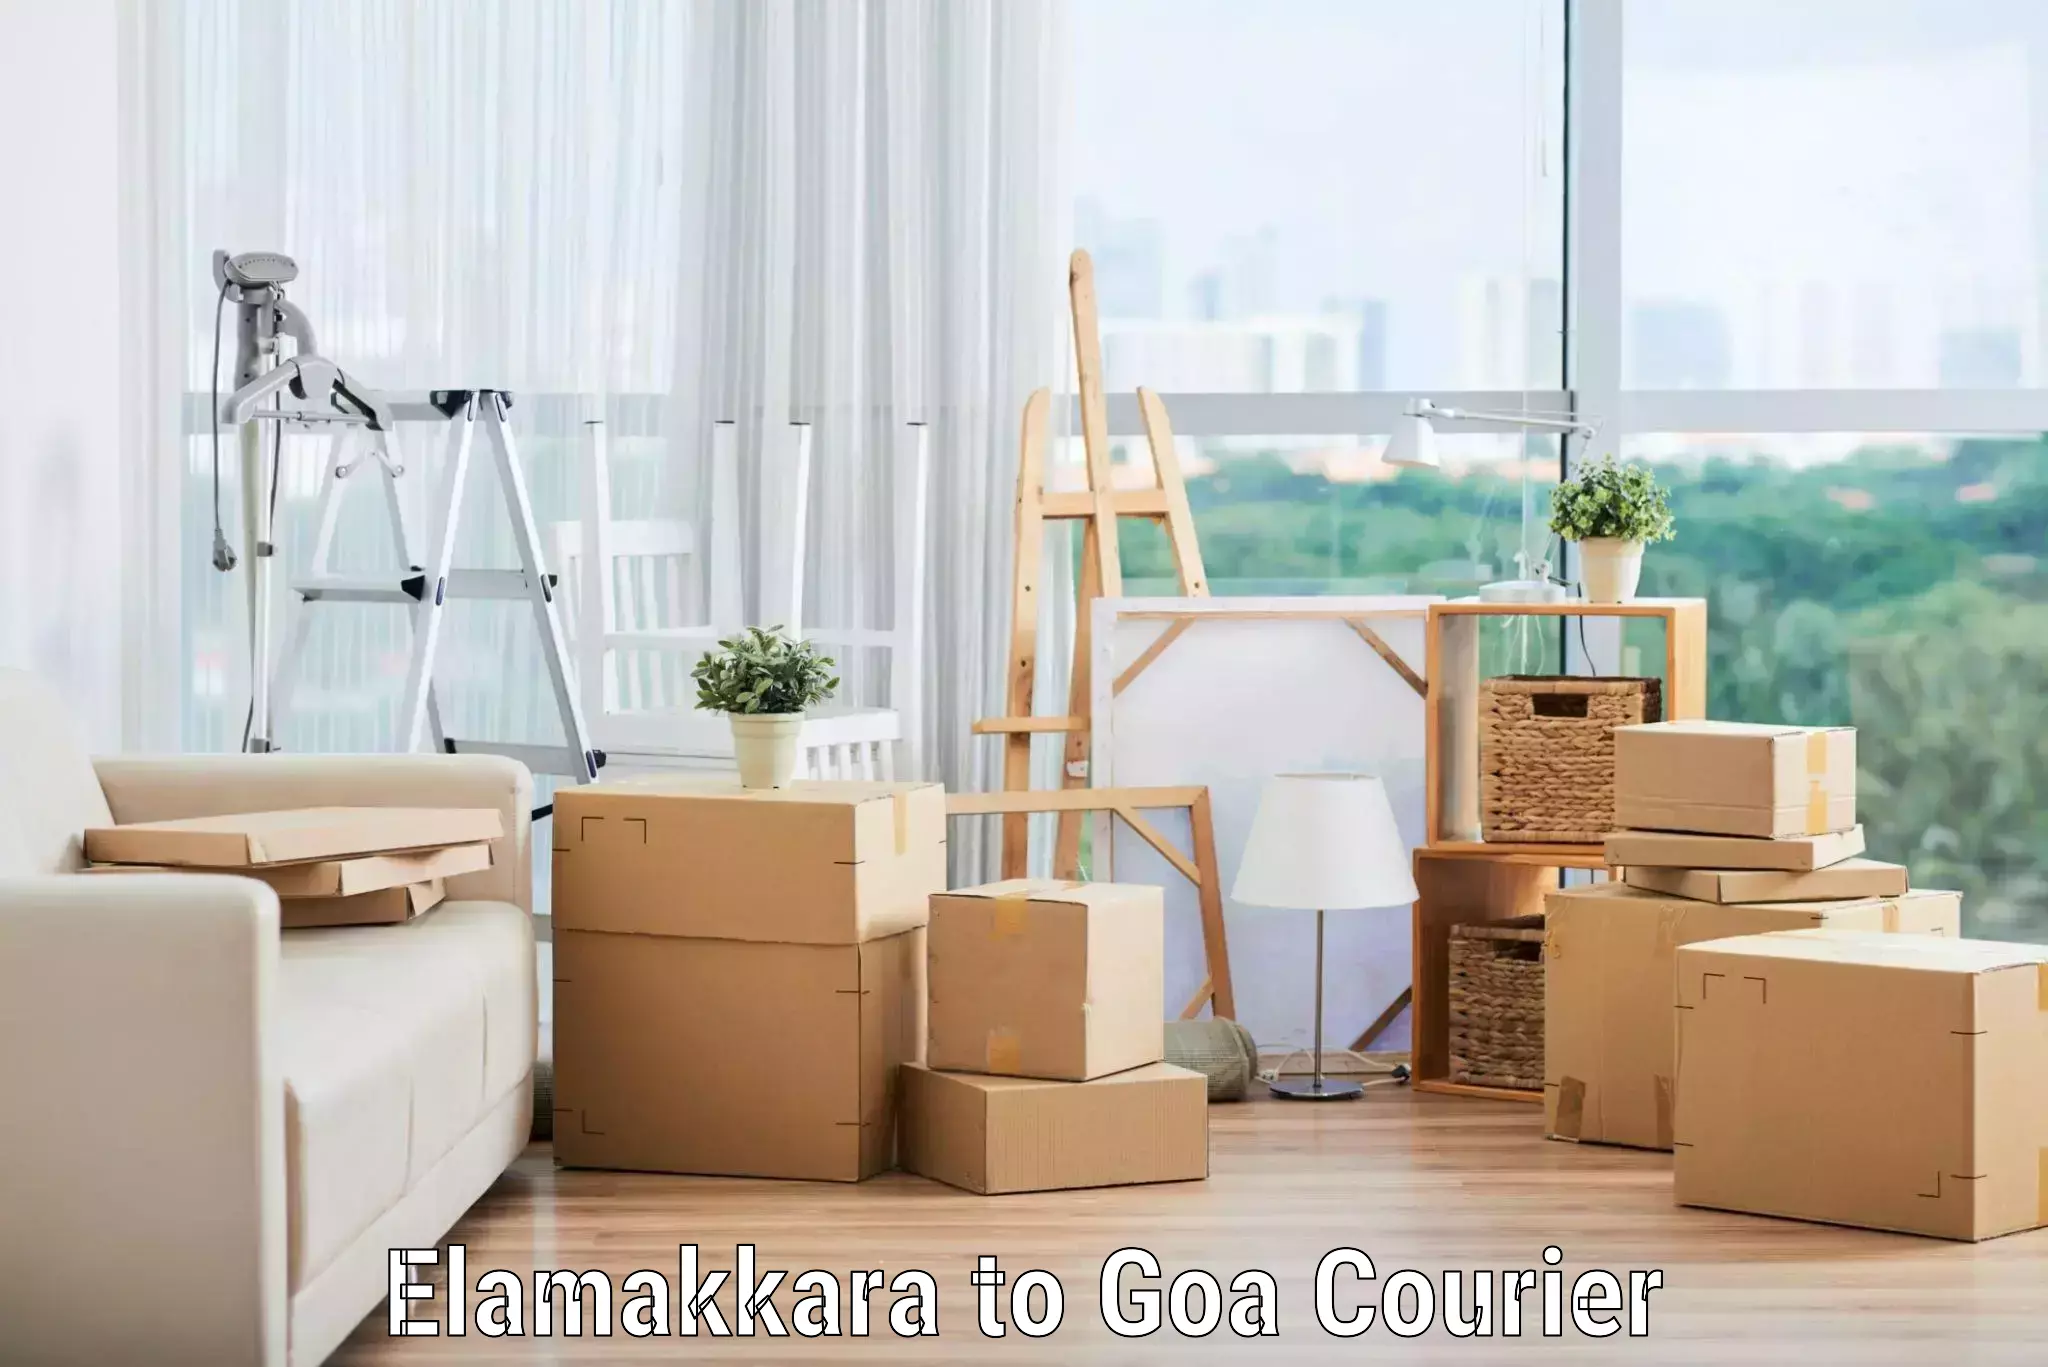 High-quality moving services Elamakkara to Goa